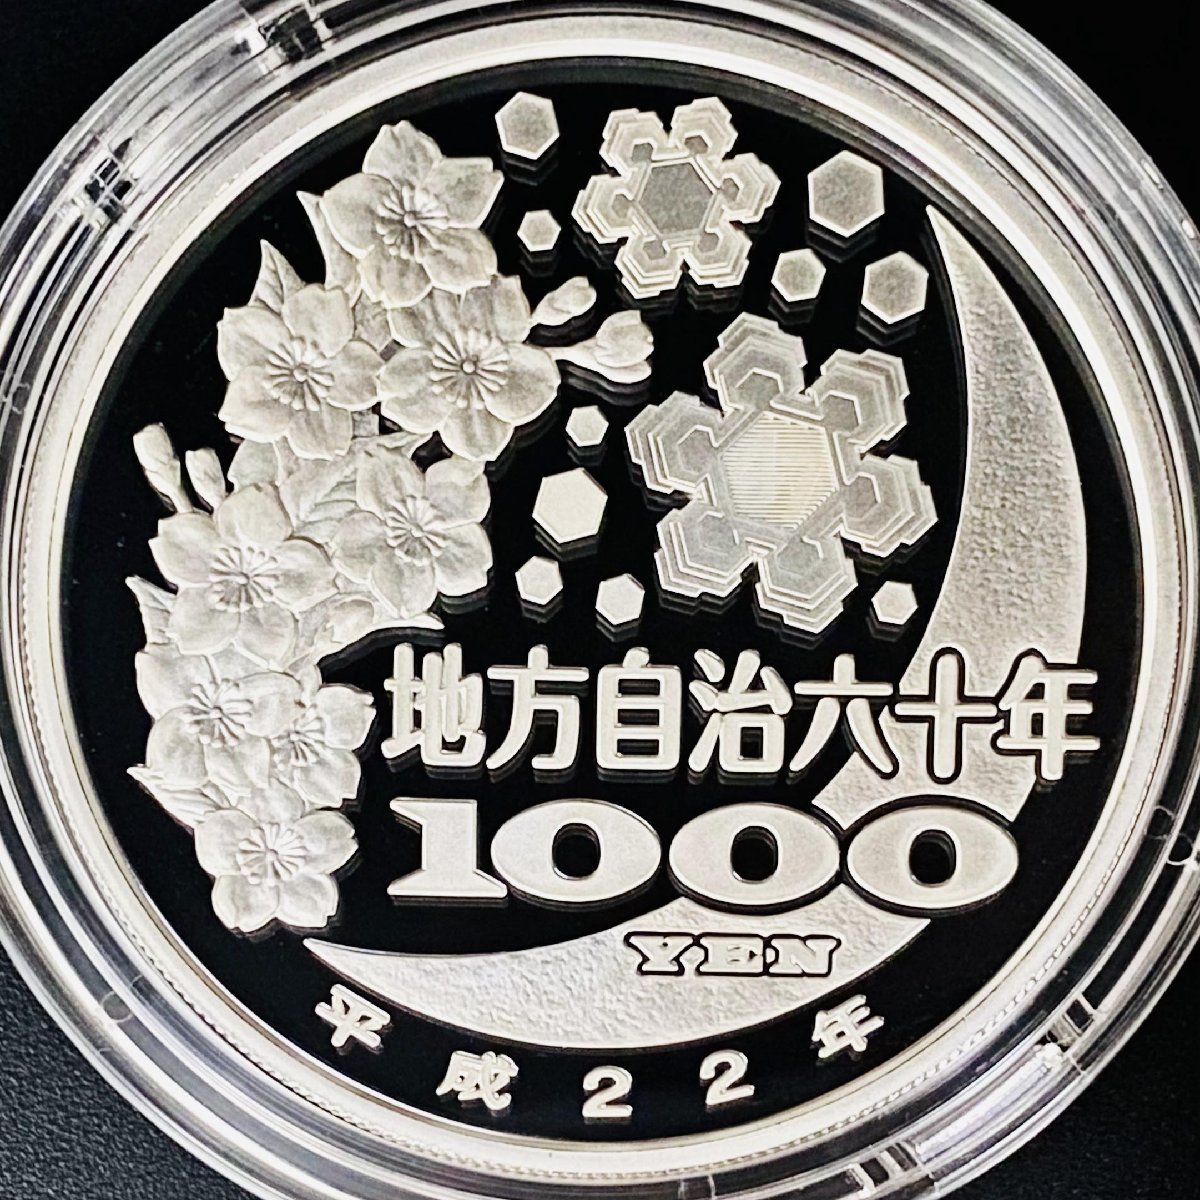 地方自治法施行60周年記念貨幣千円銀貨幣プルーフ貨幣セットAセット 